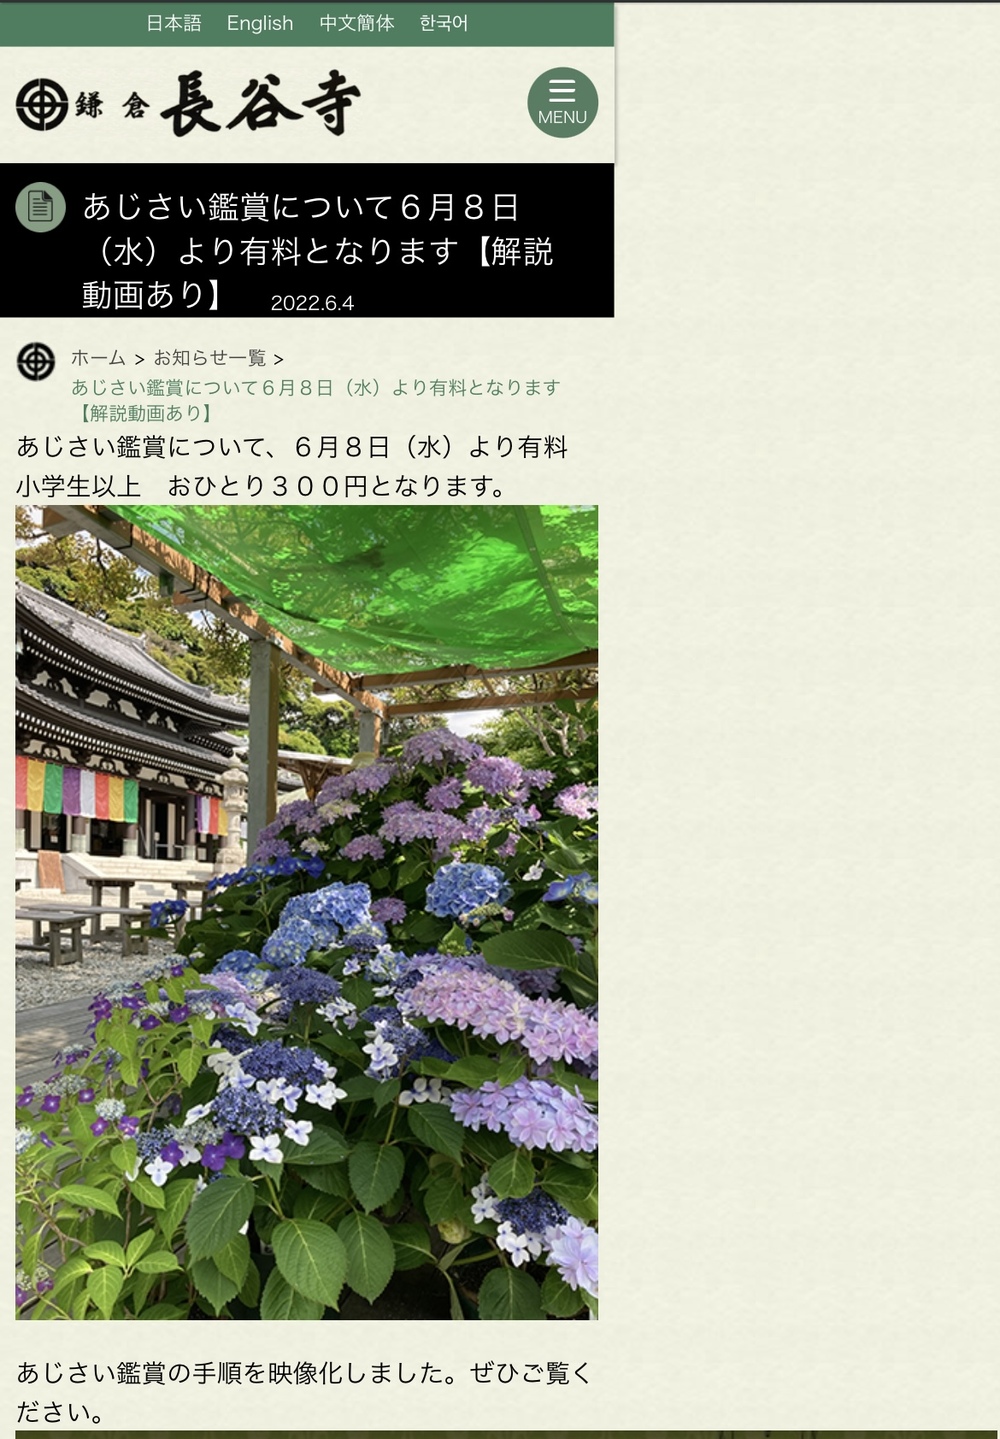 一緒に長谷寺に紫陽花を観に行く🚃鎌倉巡り